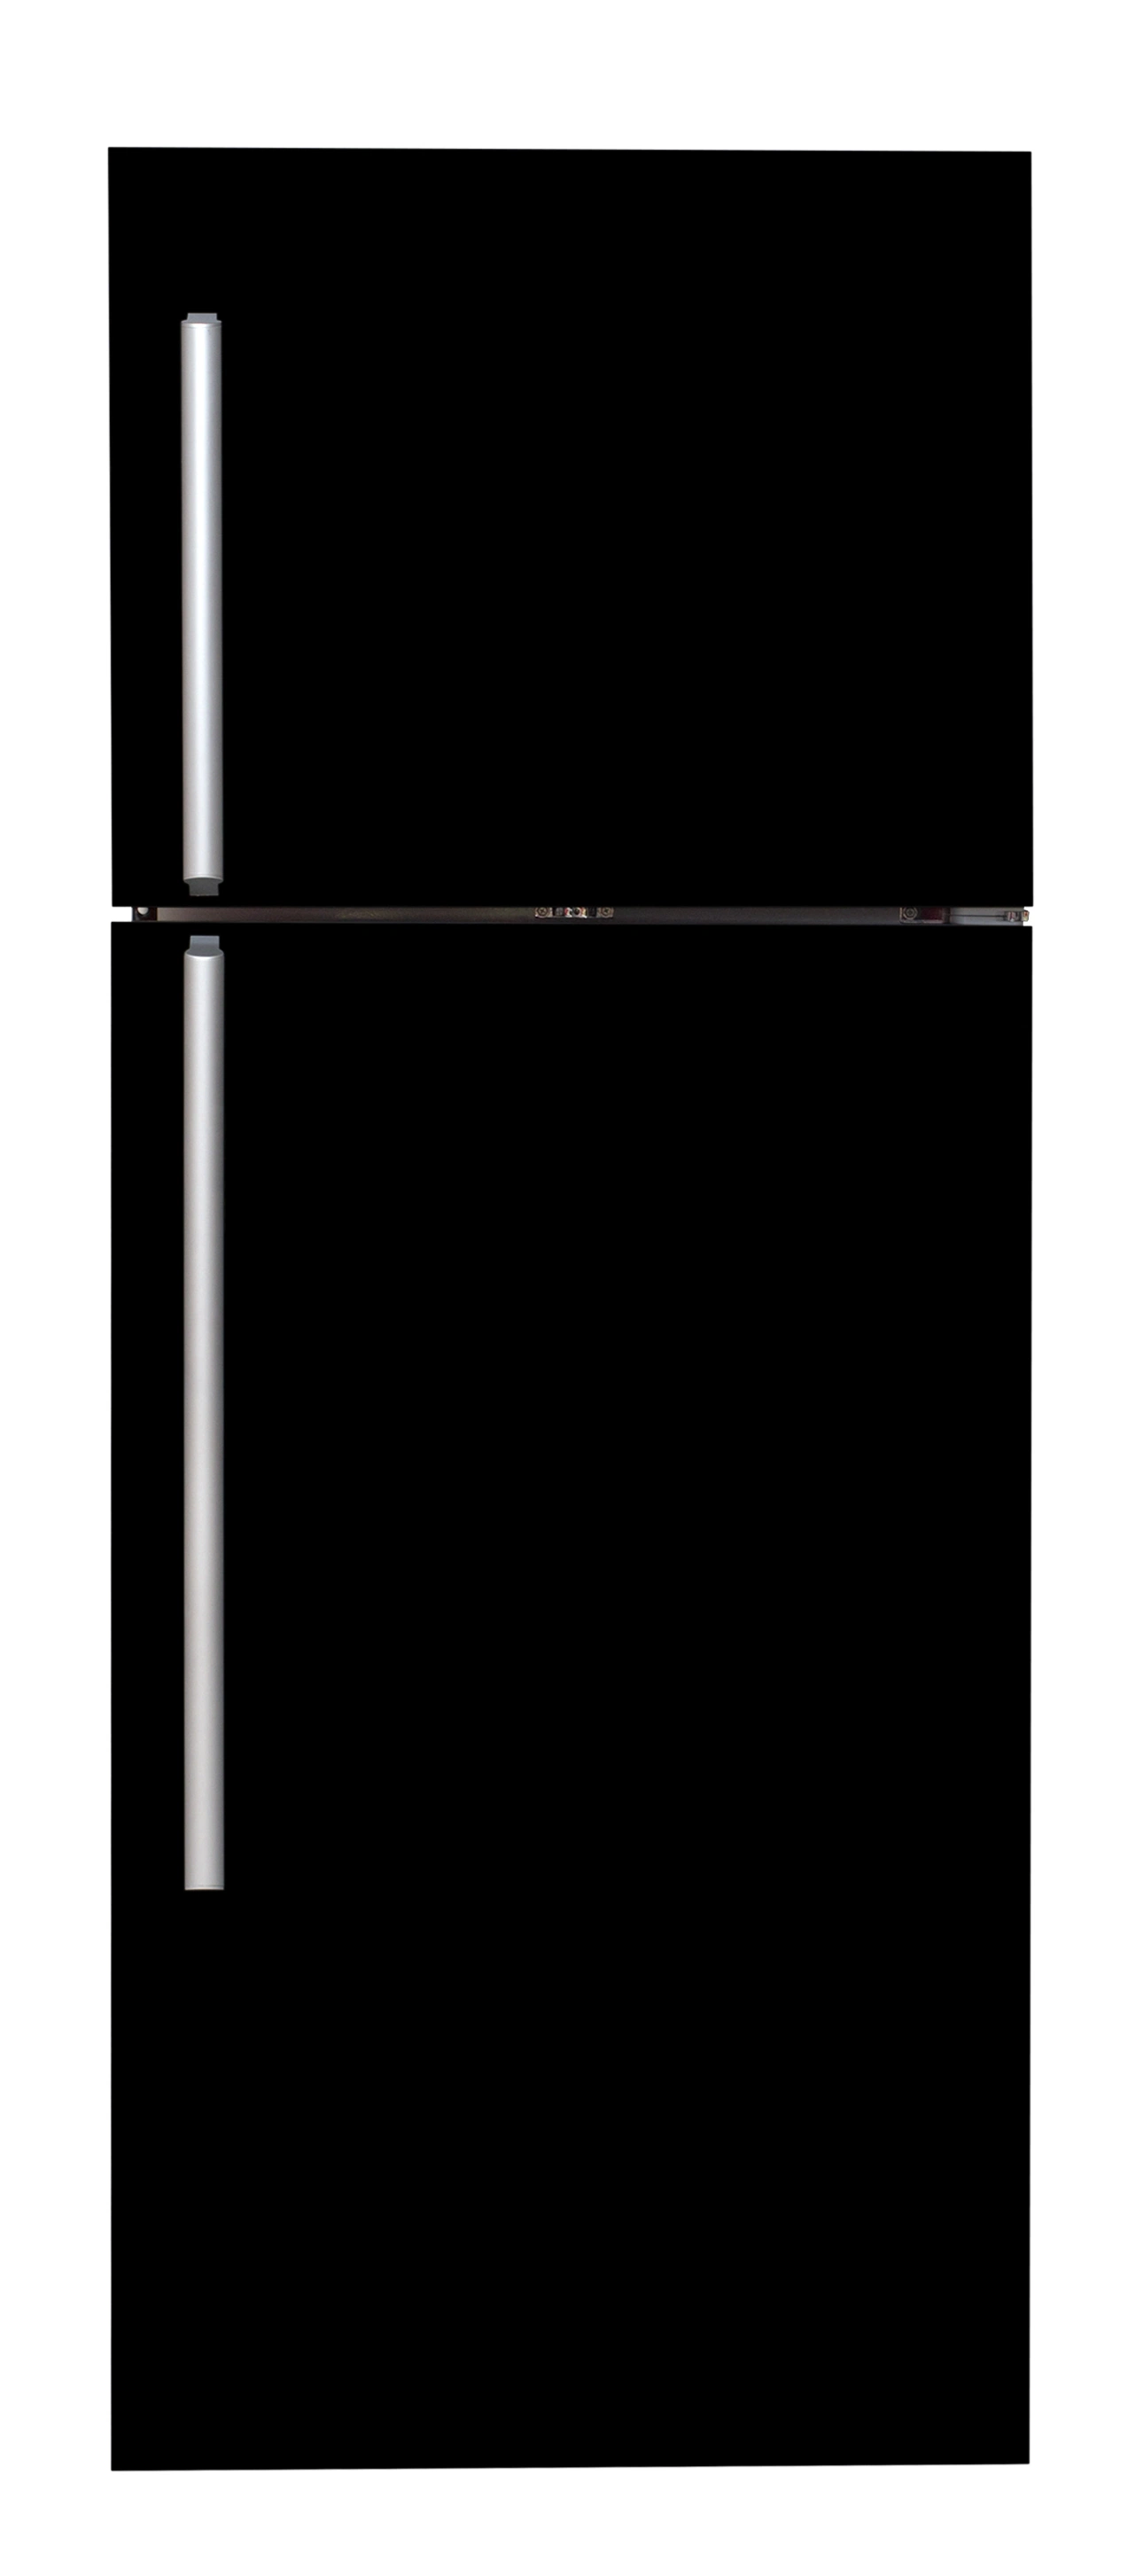 510L Venta en caliente Doble Puerta Gran Tamaño Arriba Freezer Inicio Utilice refrigerador refrigerador refrigerador congelador horizontal 110V/220V